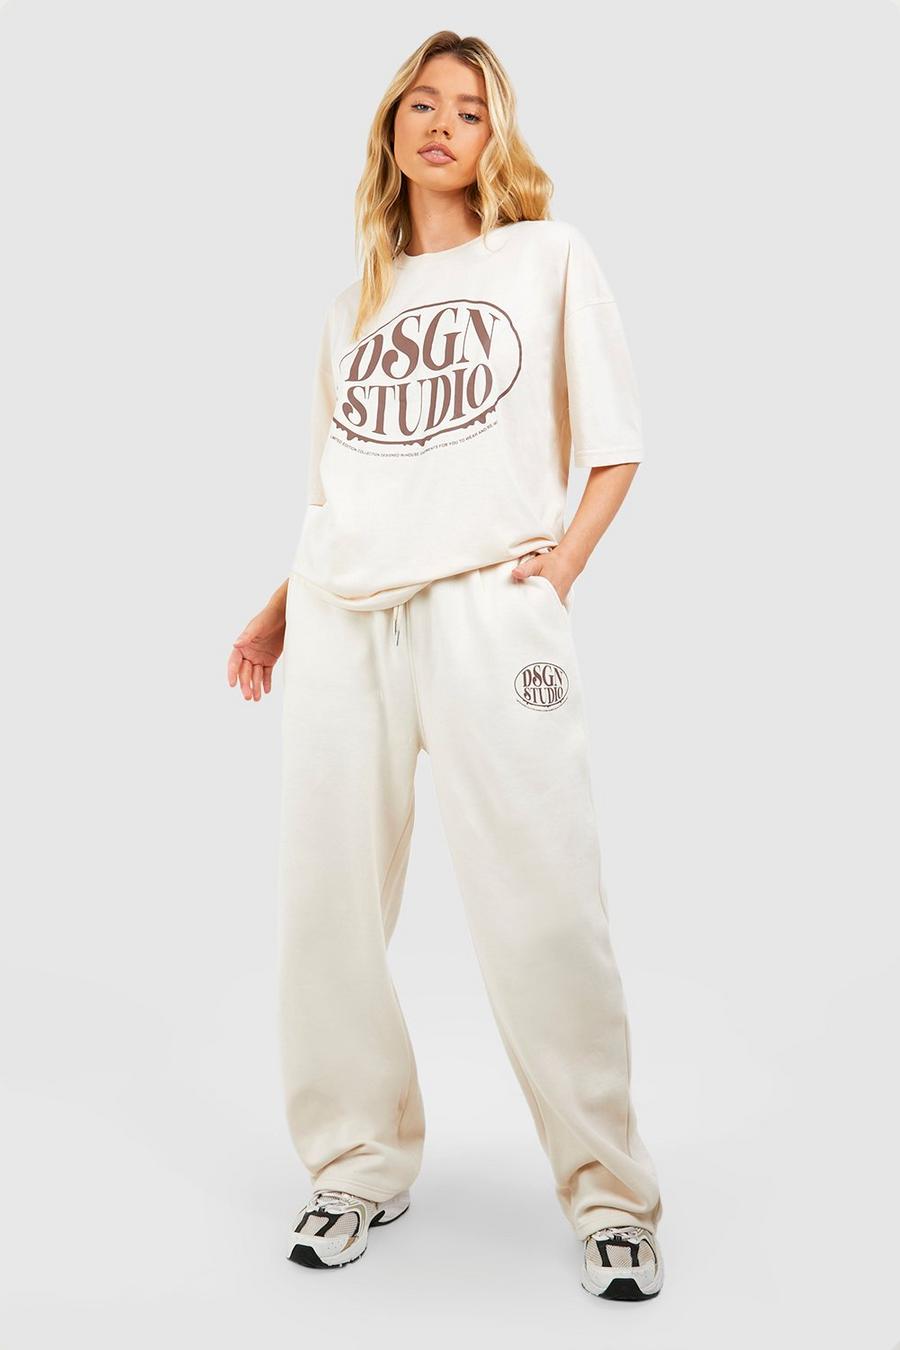 Conjunto de pantalón deportivo y camiseta con eslogan Dsgn Studio, Stone image number 1